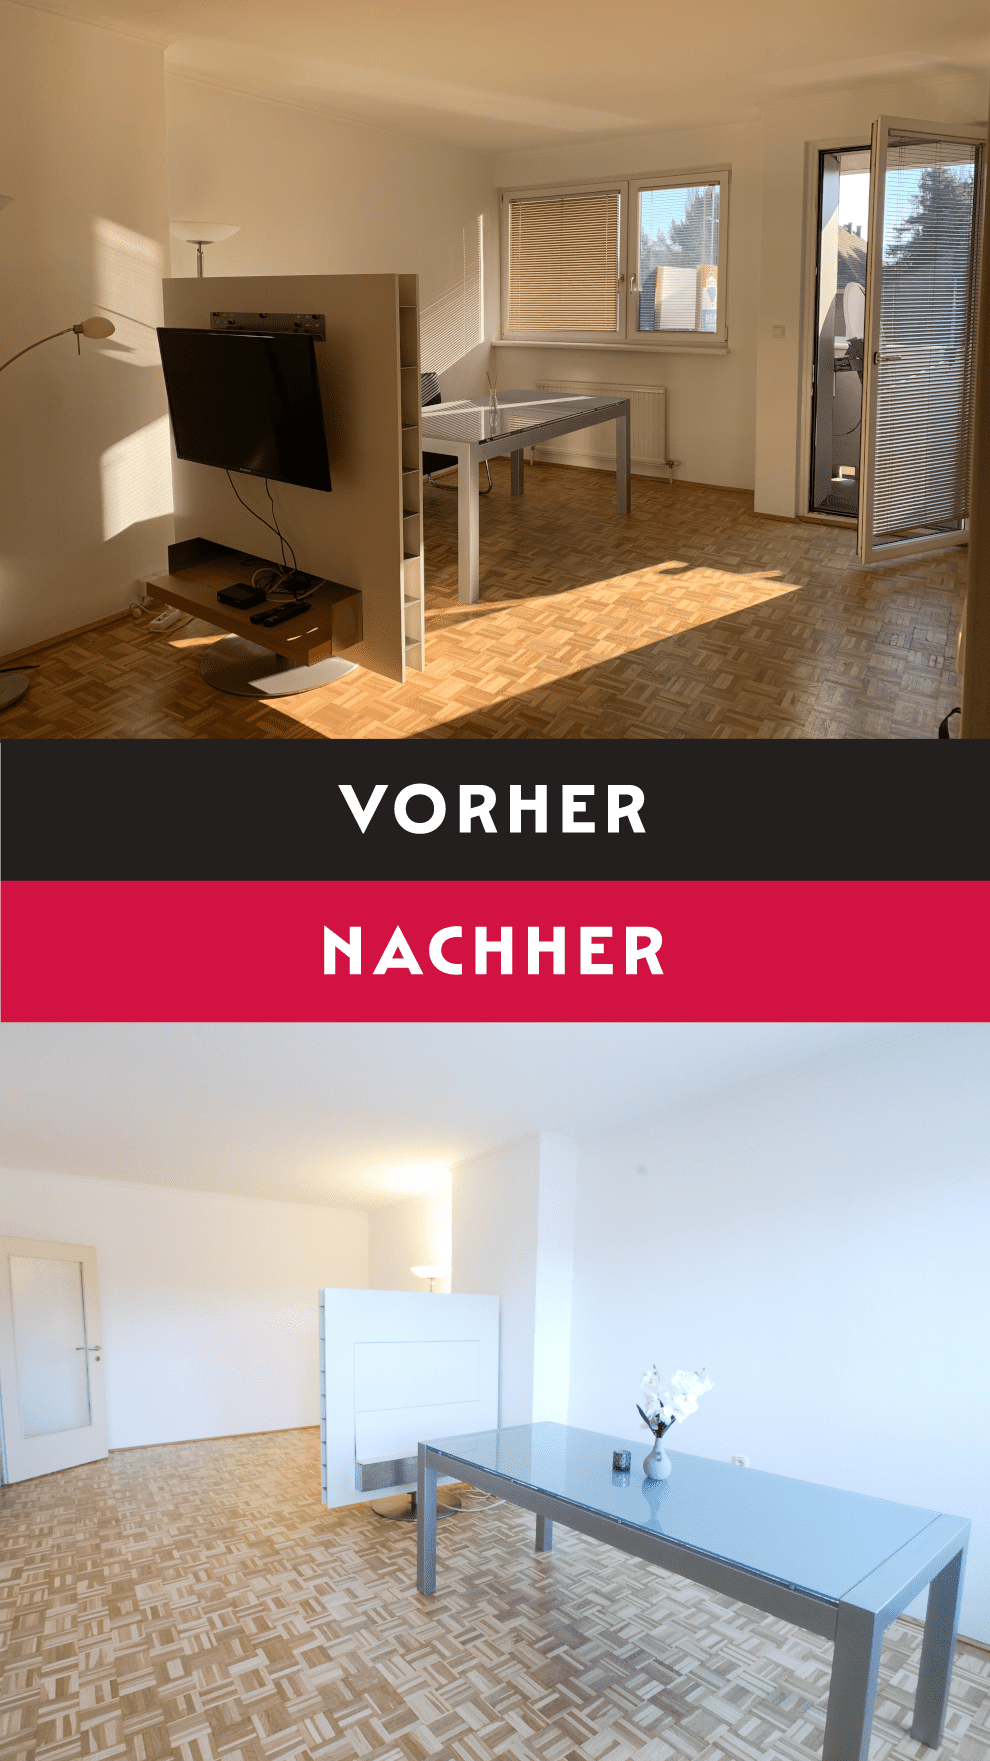 Eine Fotomontage mit Vorher-Nachher-Vergleich eines geräumigen Wohnzimmers mit quadratischem Parkettboden